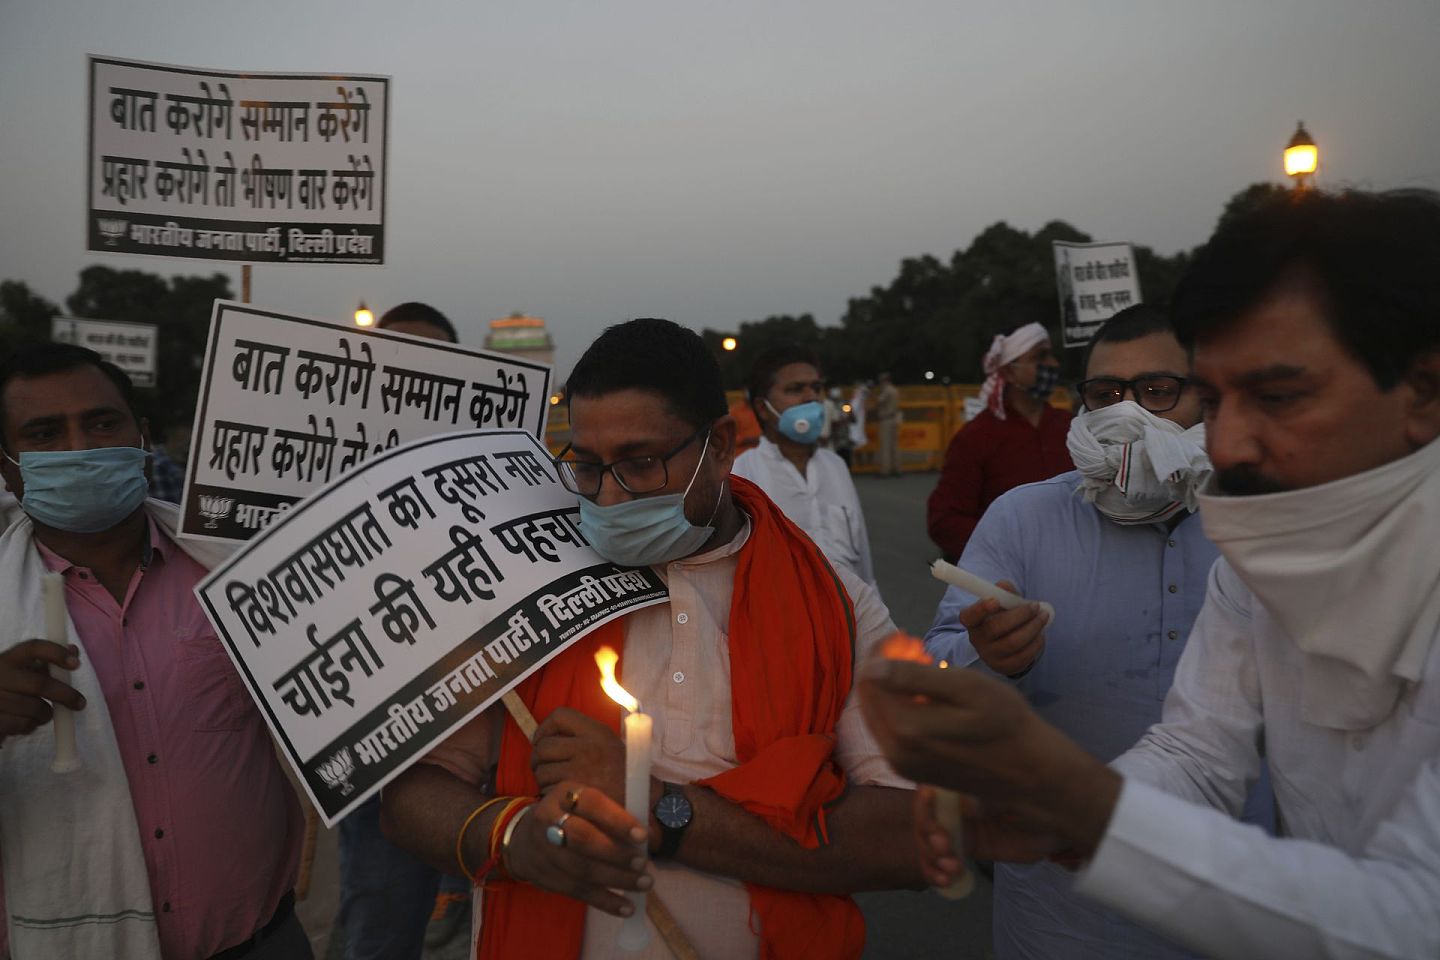 6月17日，印度执政党印度人民党成员在新德里的印度门纪念碑前游行，手持蜡烛，向在拉达克地区与中国士兵对峙中丧生的印度士兵致敬。印着印地语的标语上写着：“如果你说话，我们会尊重；如果你攻击，我们会做出可怕的回应，背叛是中国的第二个名字。”（AP）